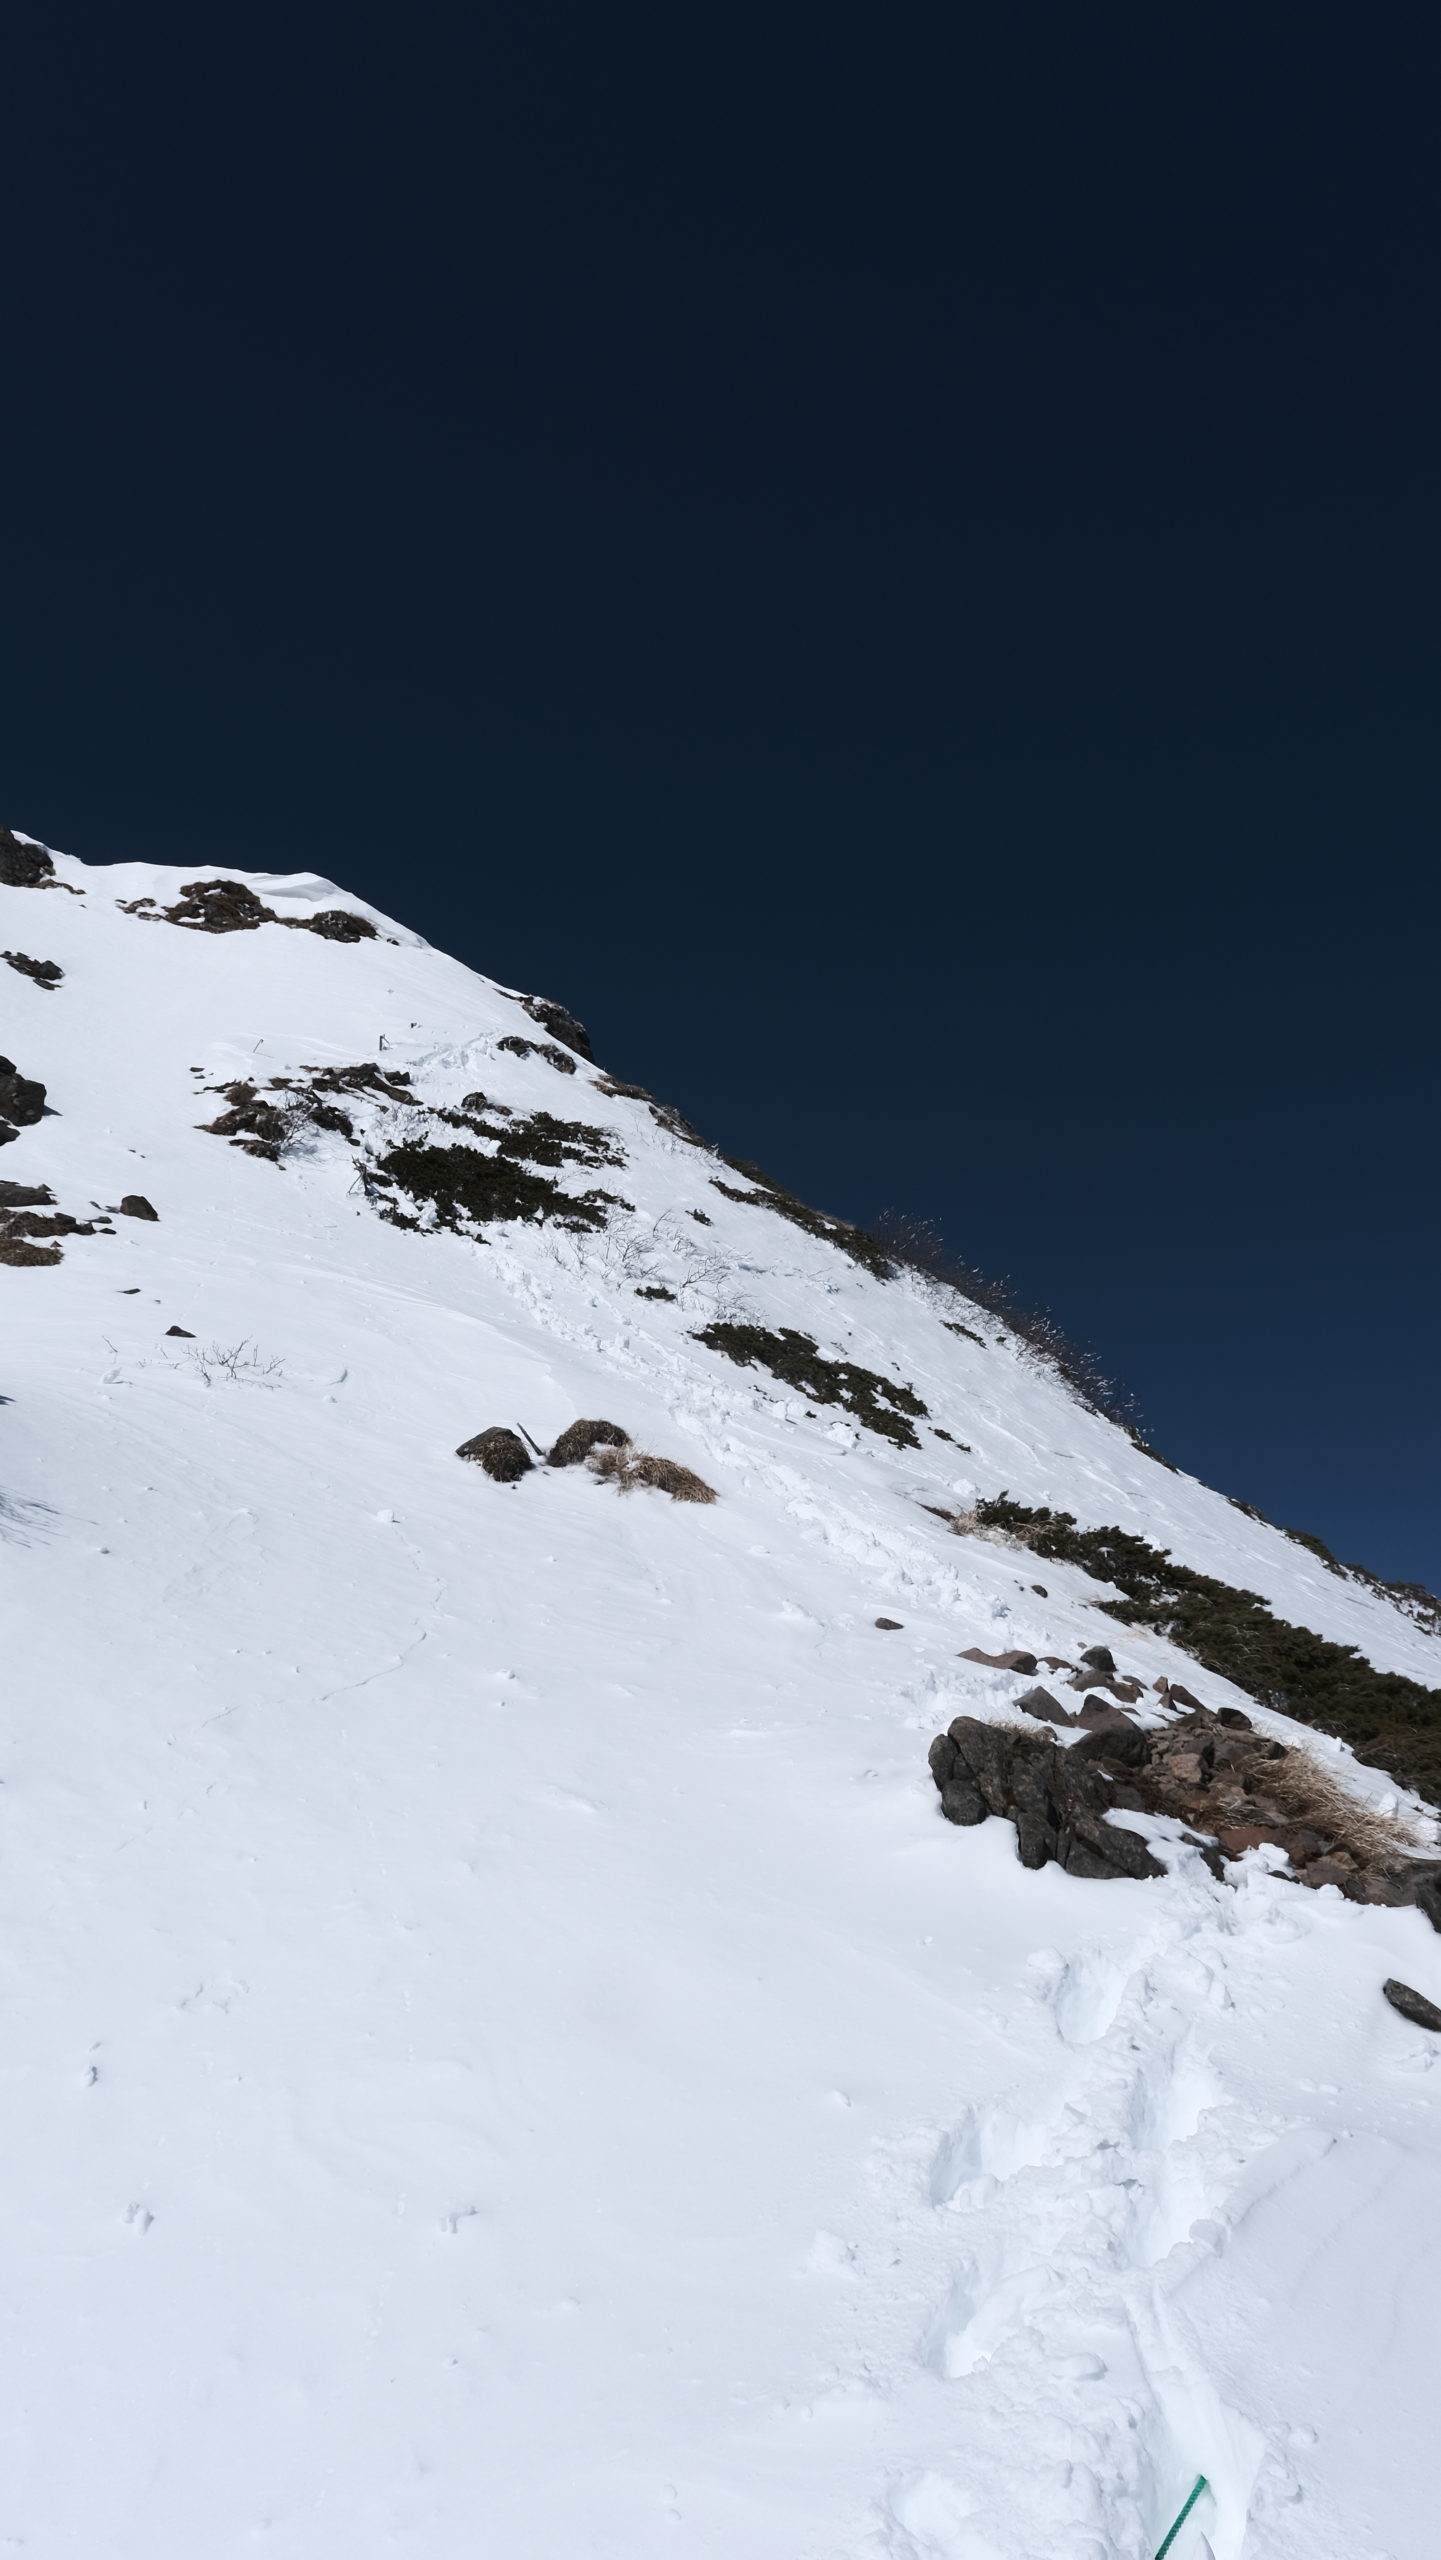 後編 Fujifilmで撮る厳冬期赤岳 八ヶ岳主峰へ Mountain Ox